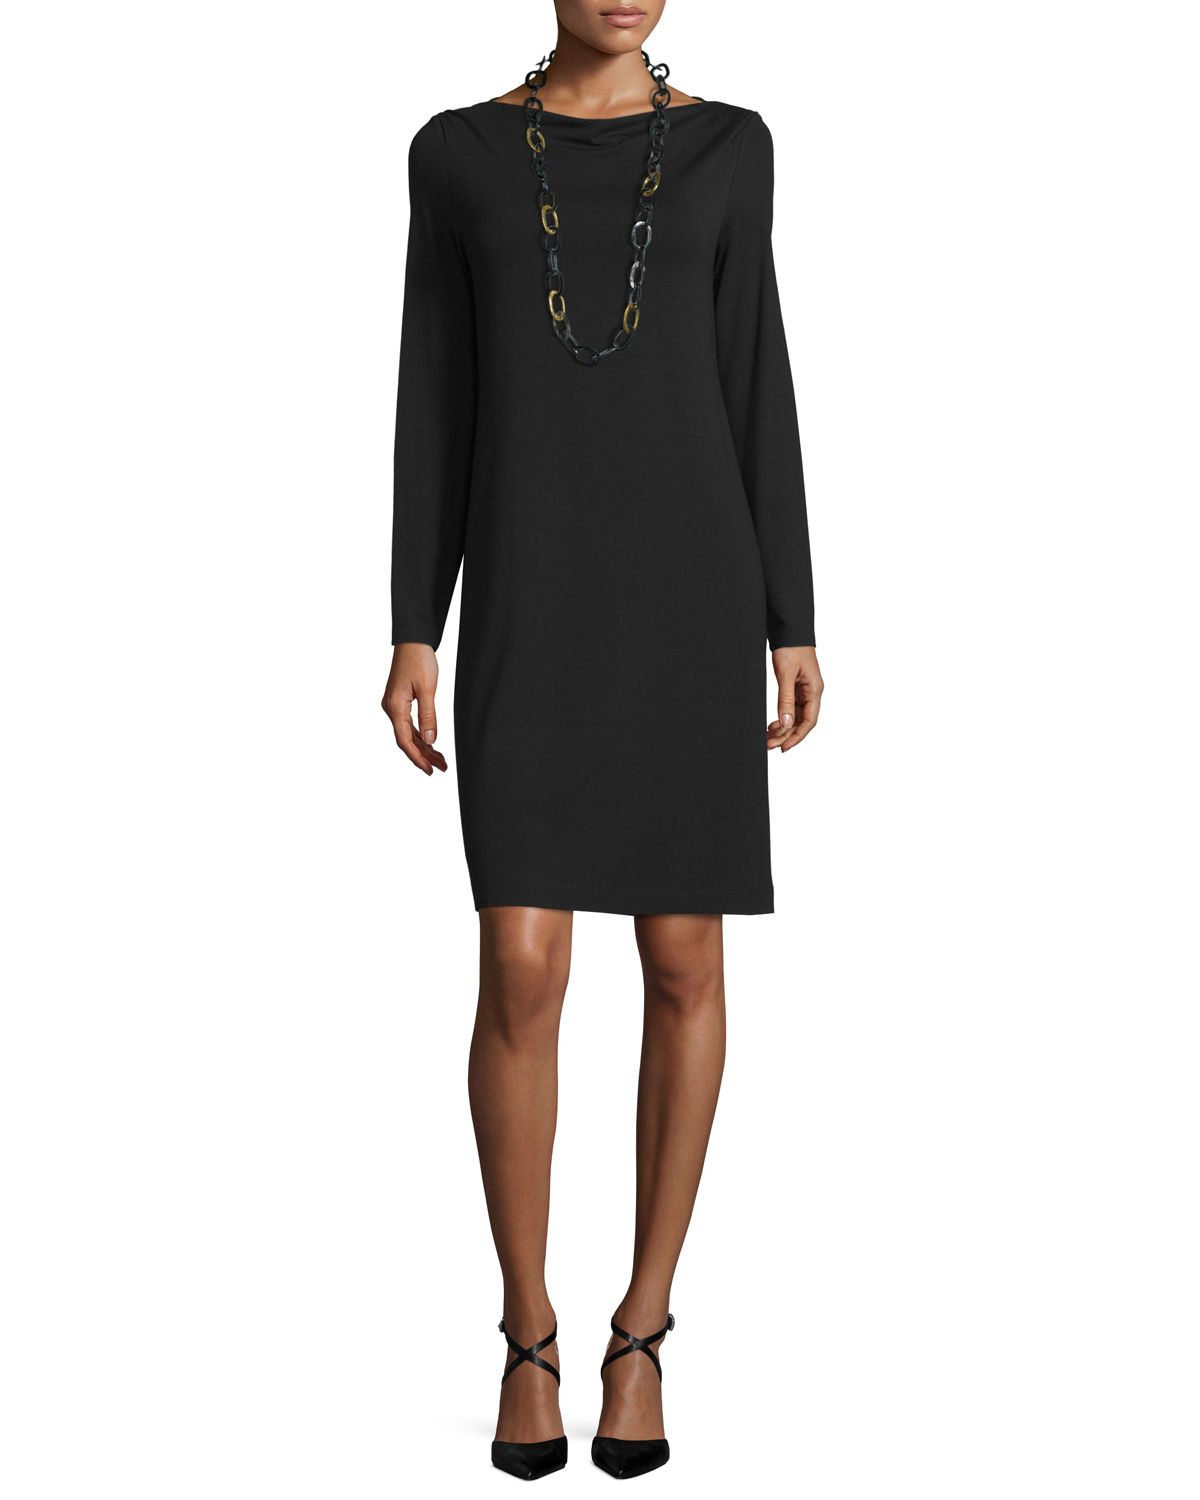 Lyst - Eileen Fisher Long-sleeve Jersey Dress in Black